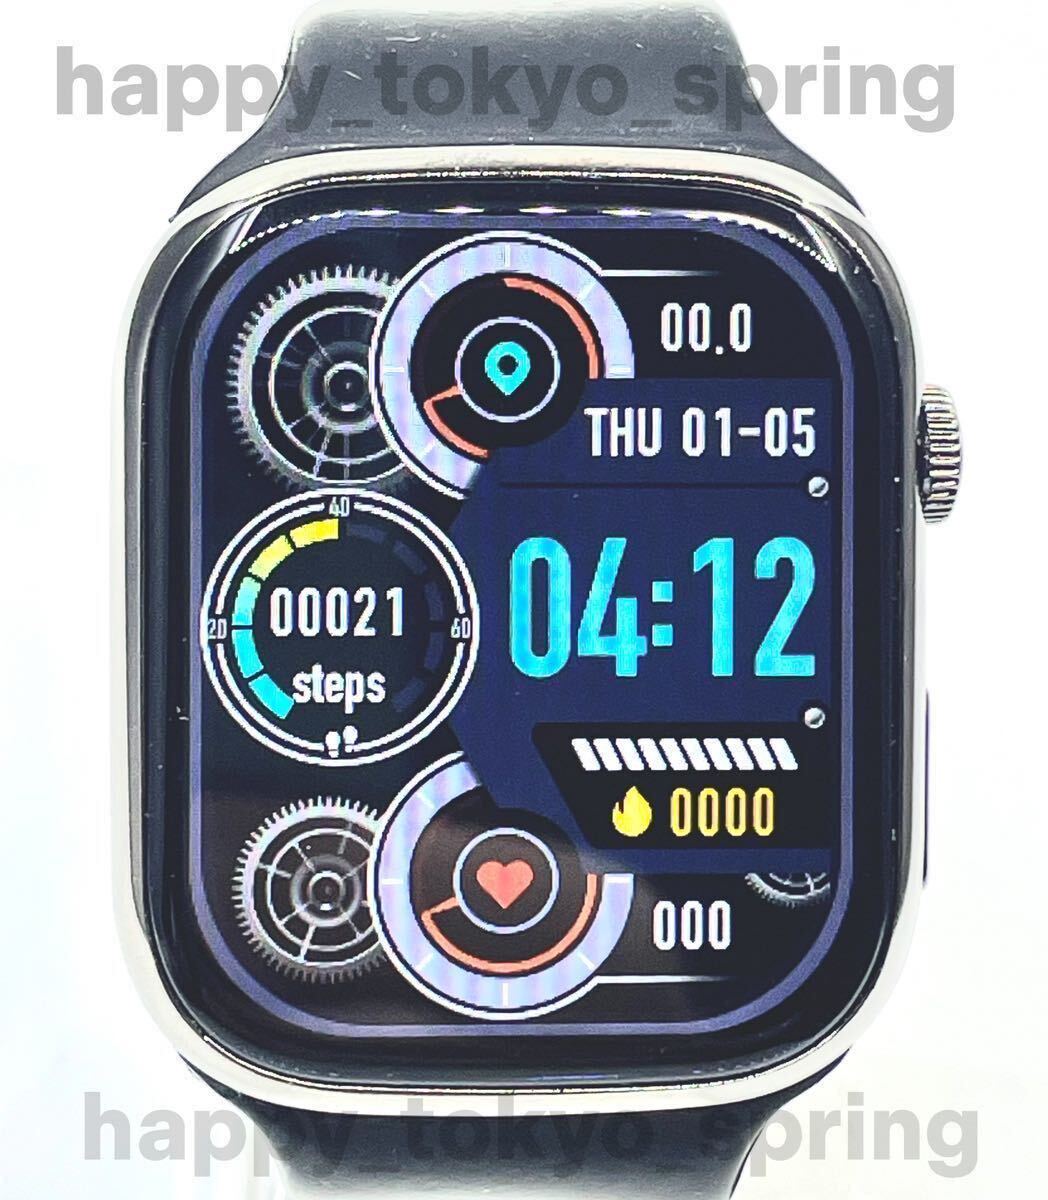  новый товар Apple Watch товар-заменитель 2.3 дюймовый большой экран смарт-часы музыка многофункциональный Watch9 здоровье спорт водонепроницаемый . средний кислород android кровяное давление iphone сон.